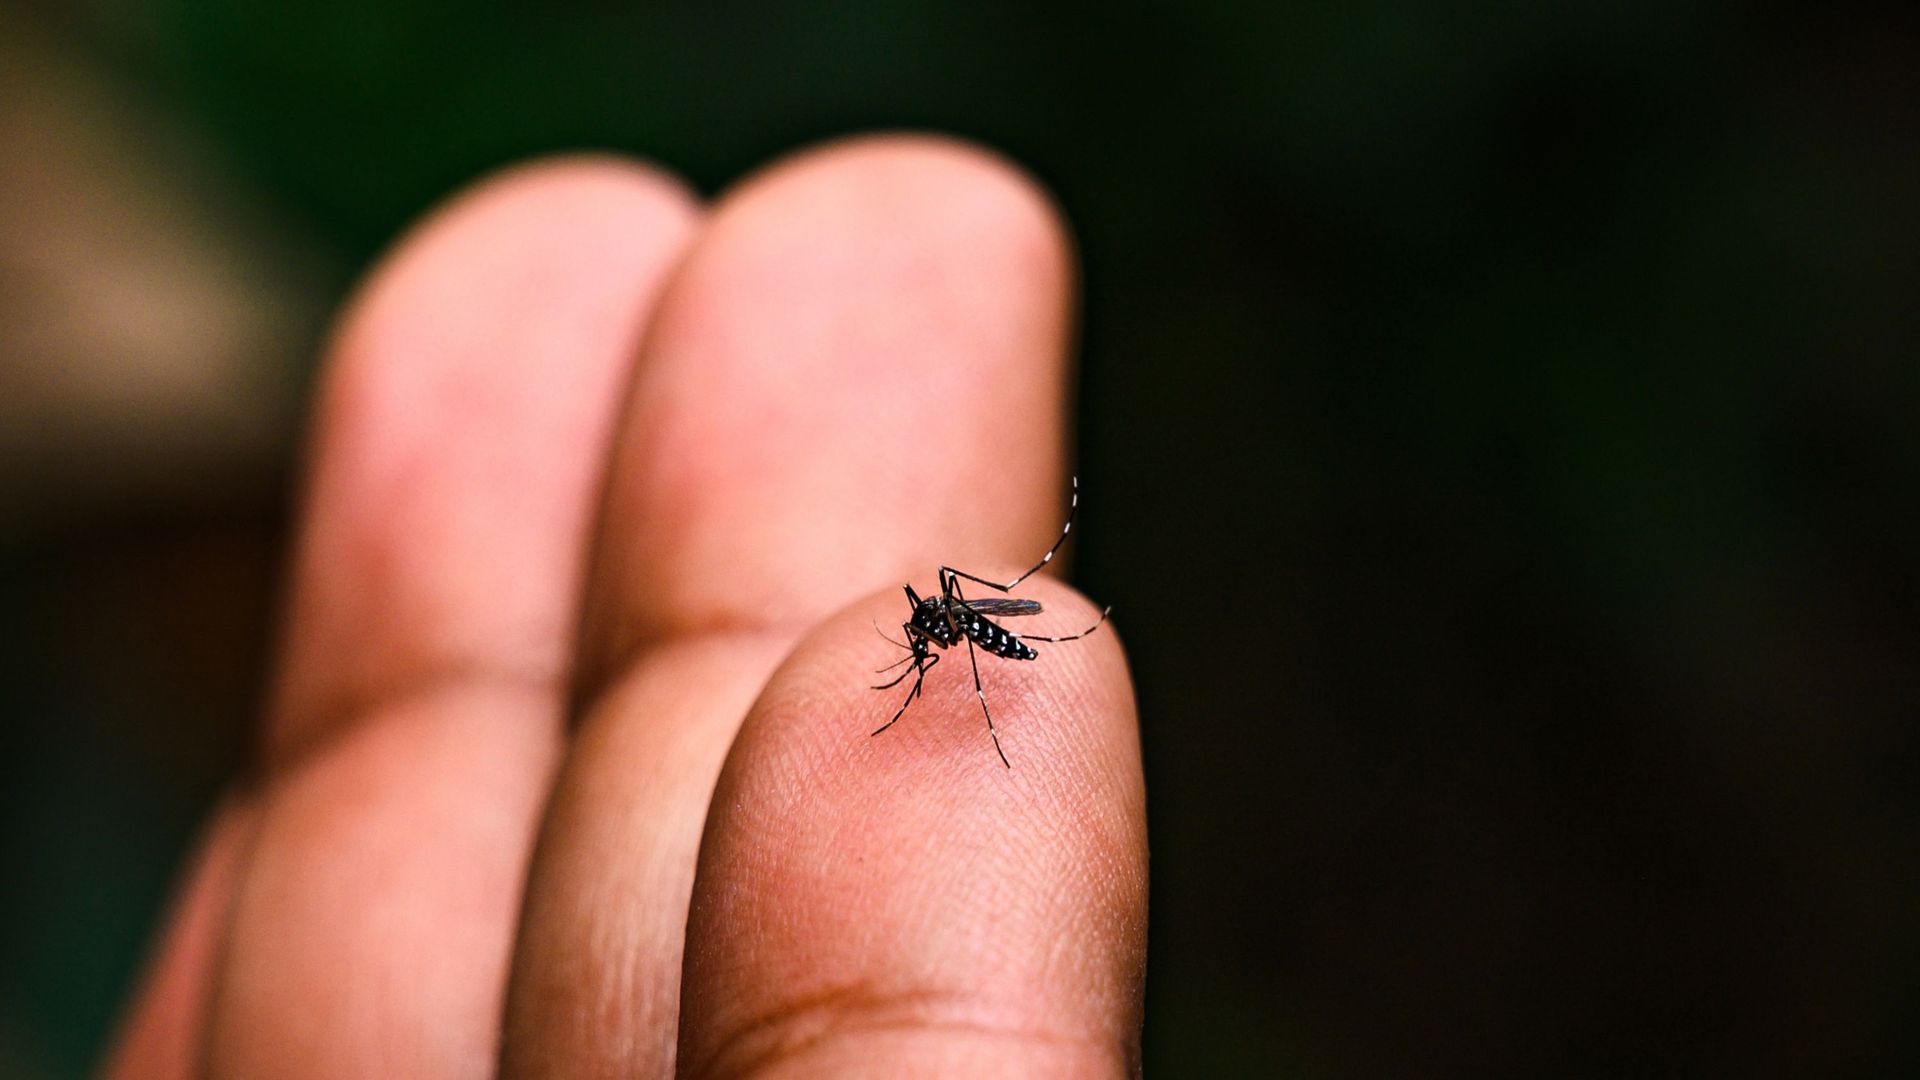 Des moustiques super résistants aux insecticides identifiés en